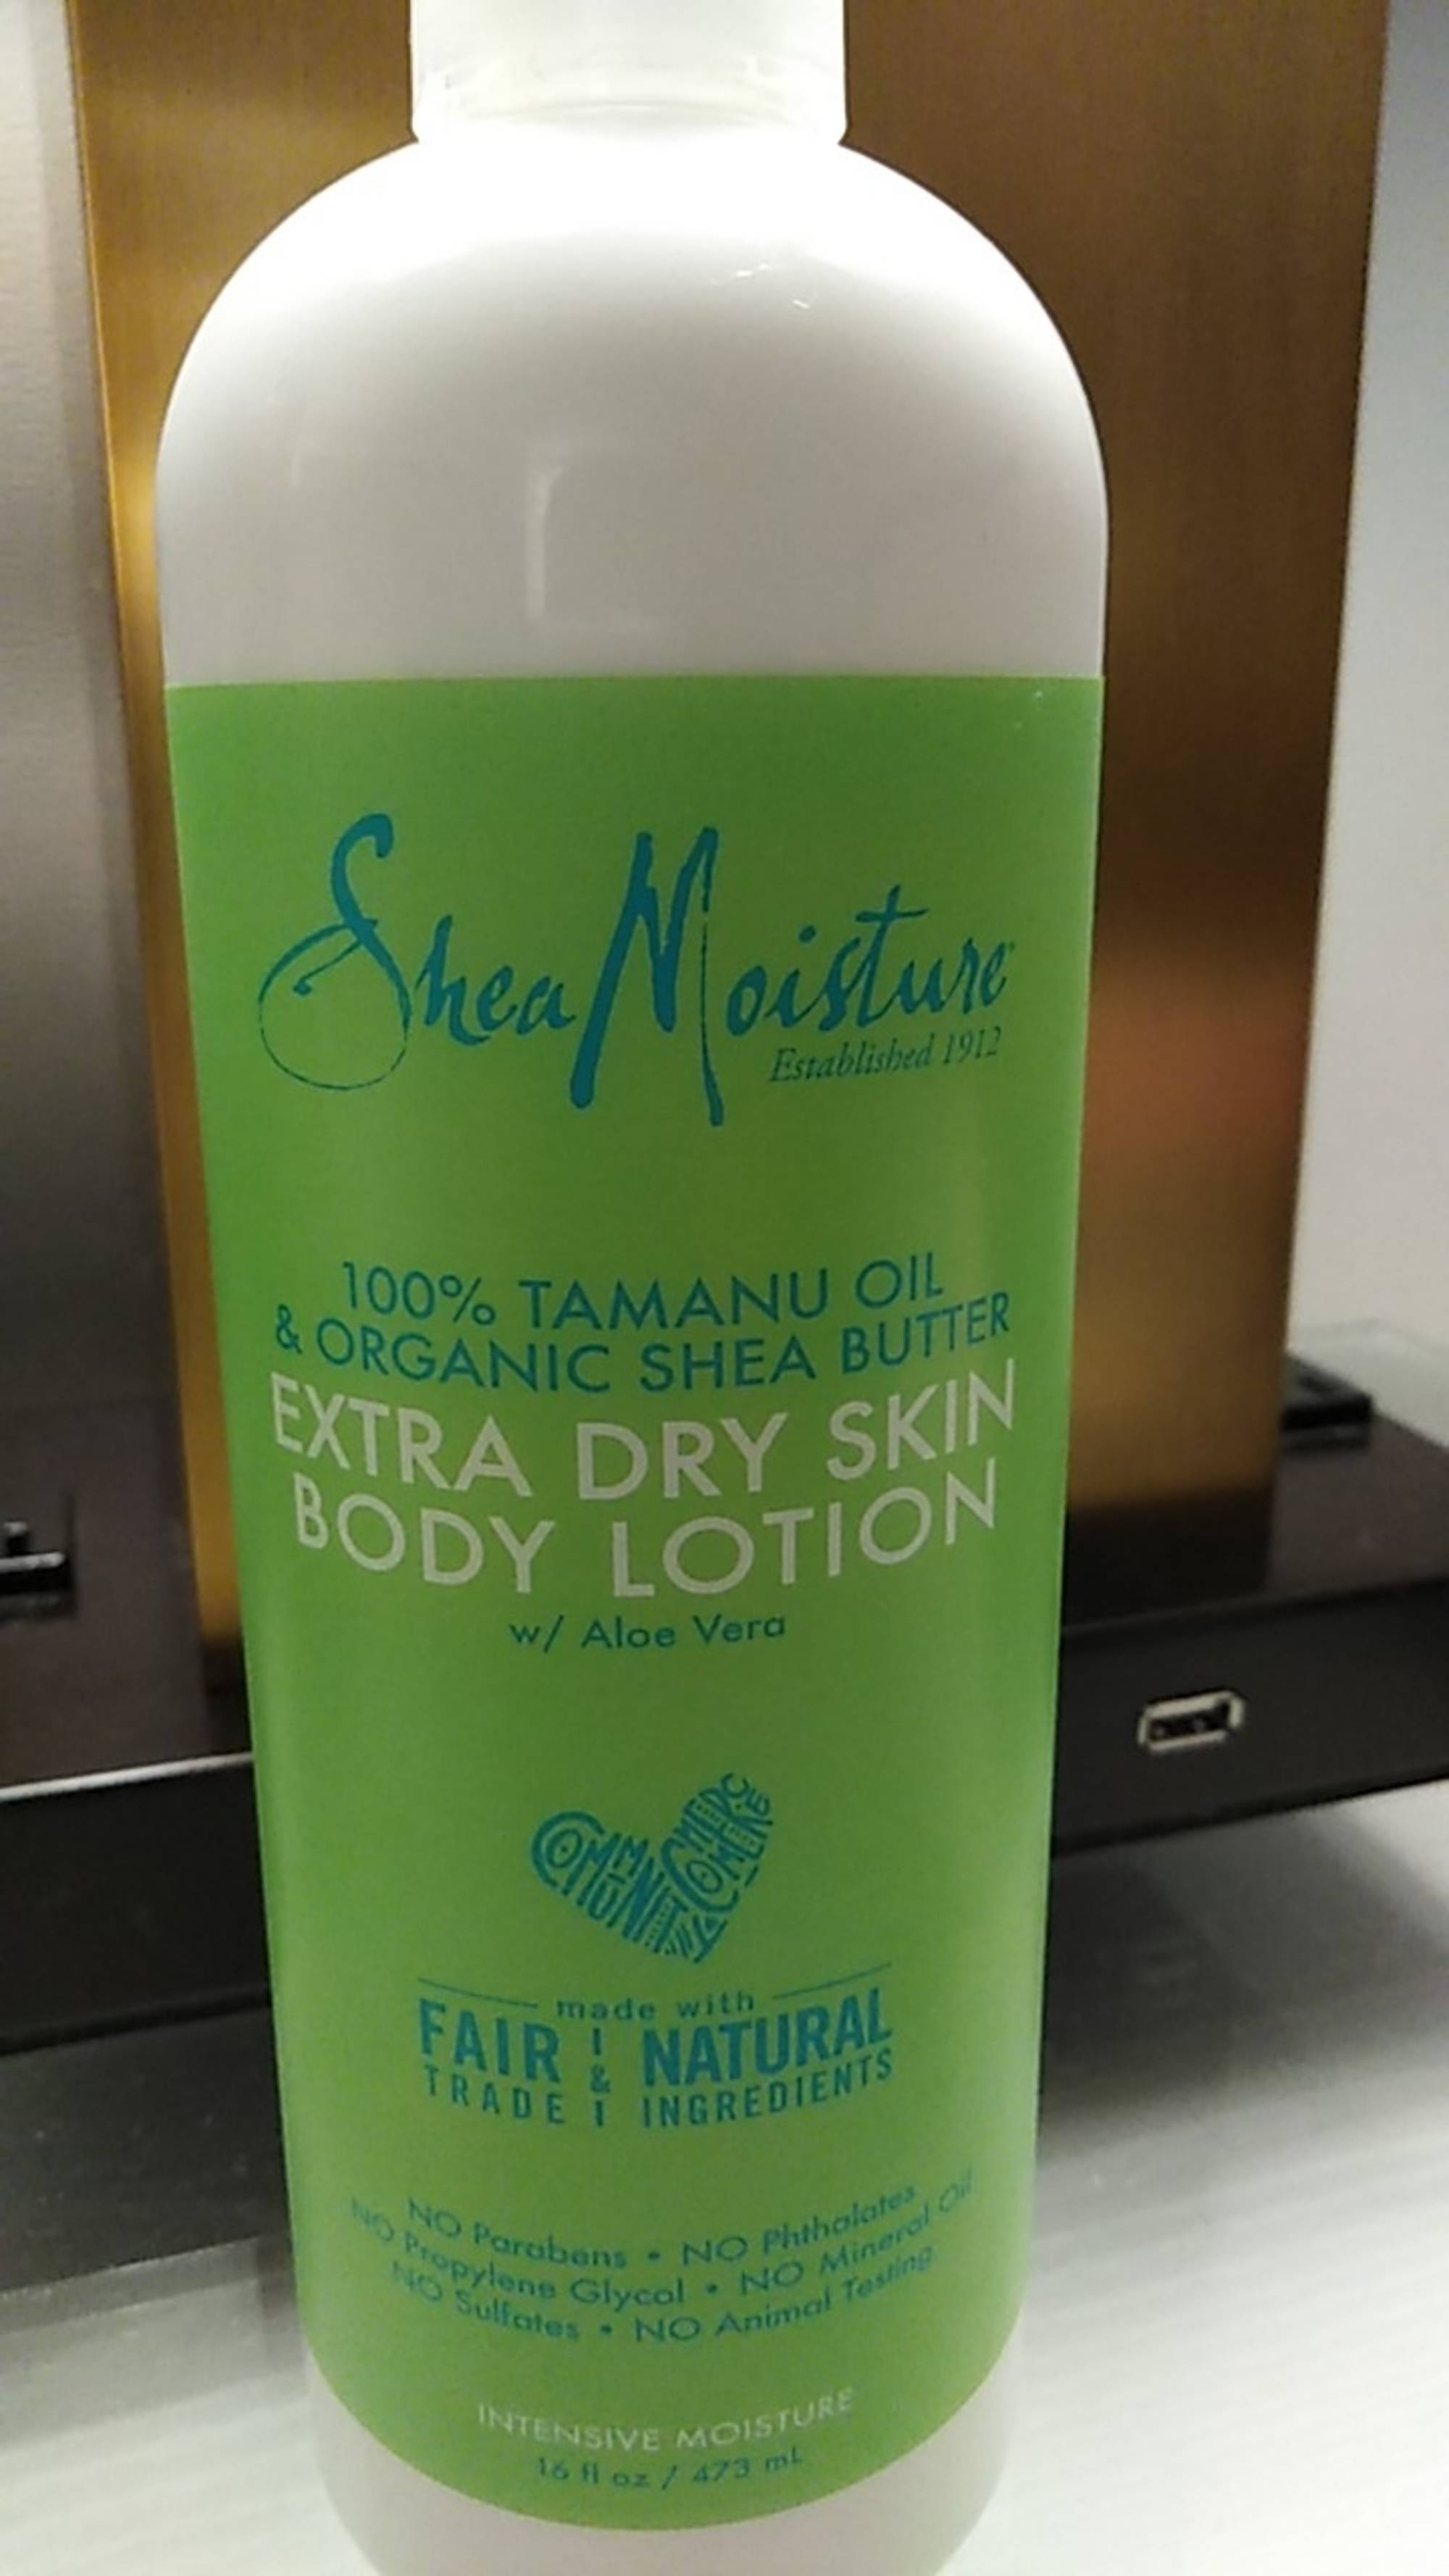 SHEA MOISTURE - 100% tamanu oil & organic shea butter - Extra dry skin body lotion